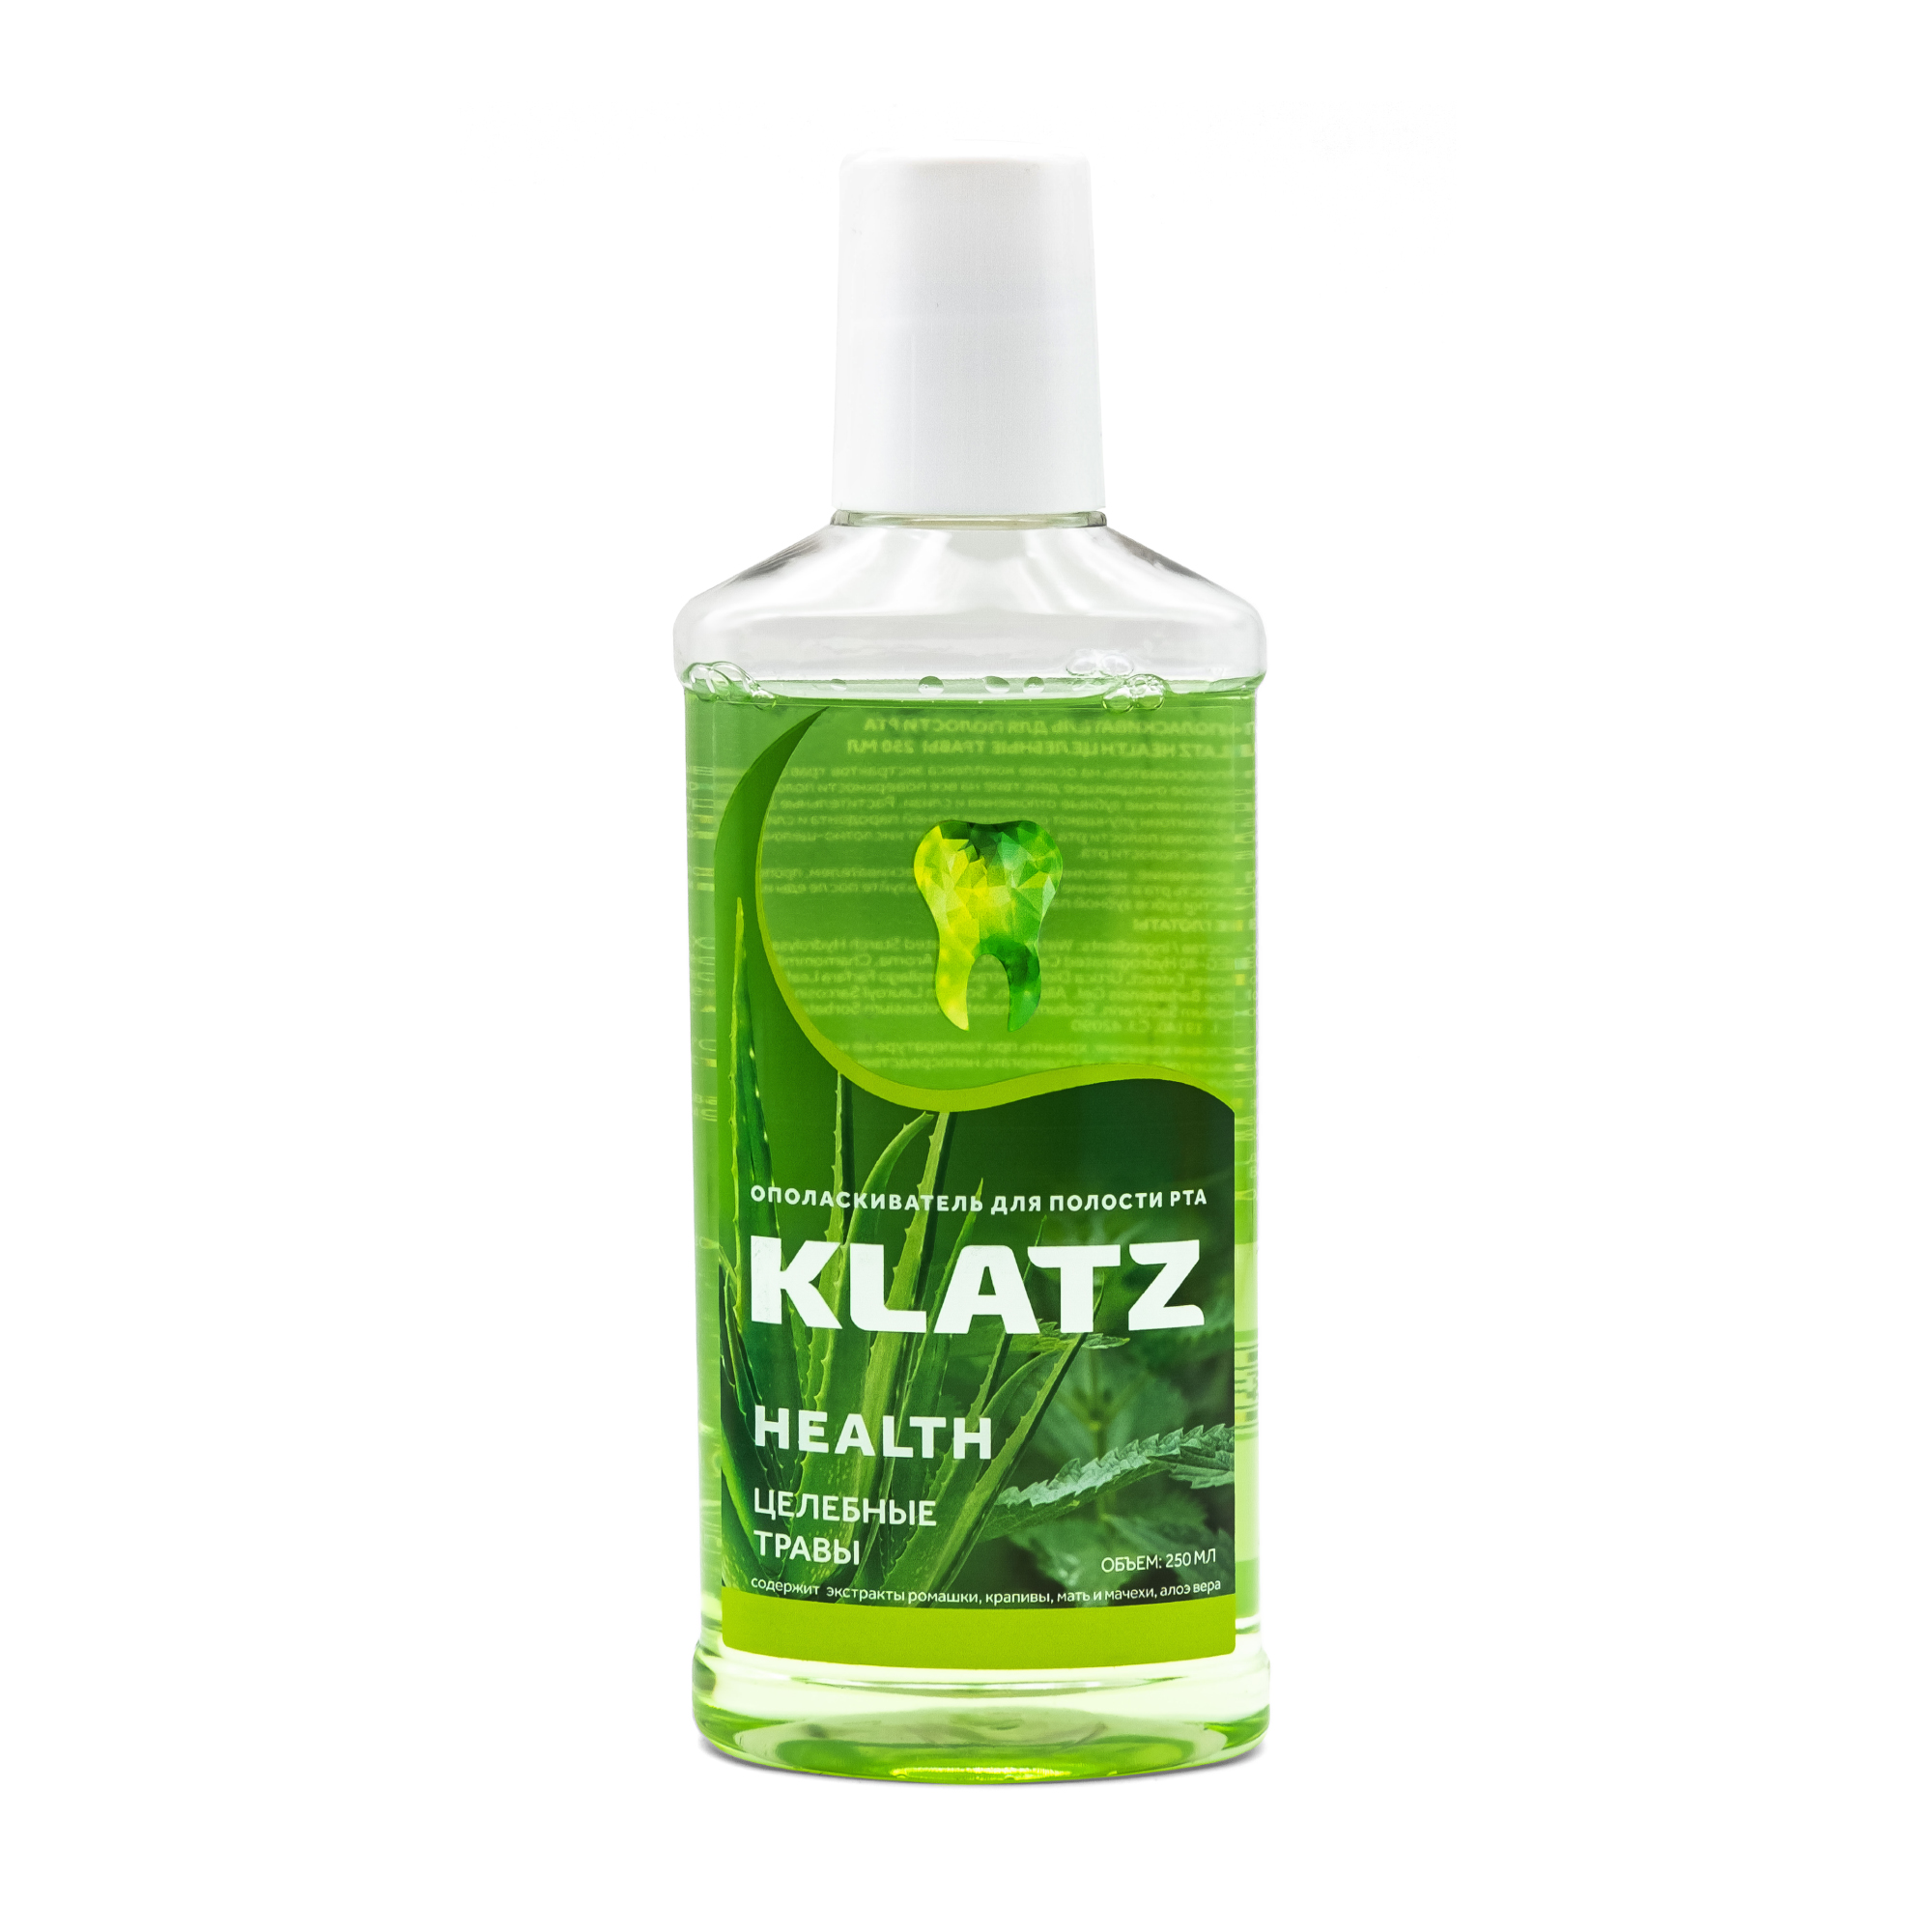 Klatz HEALTH Healing Herbs mouthwash